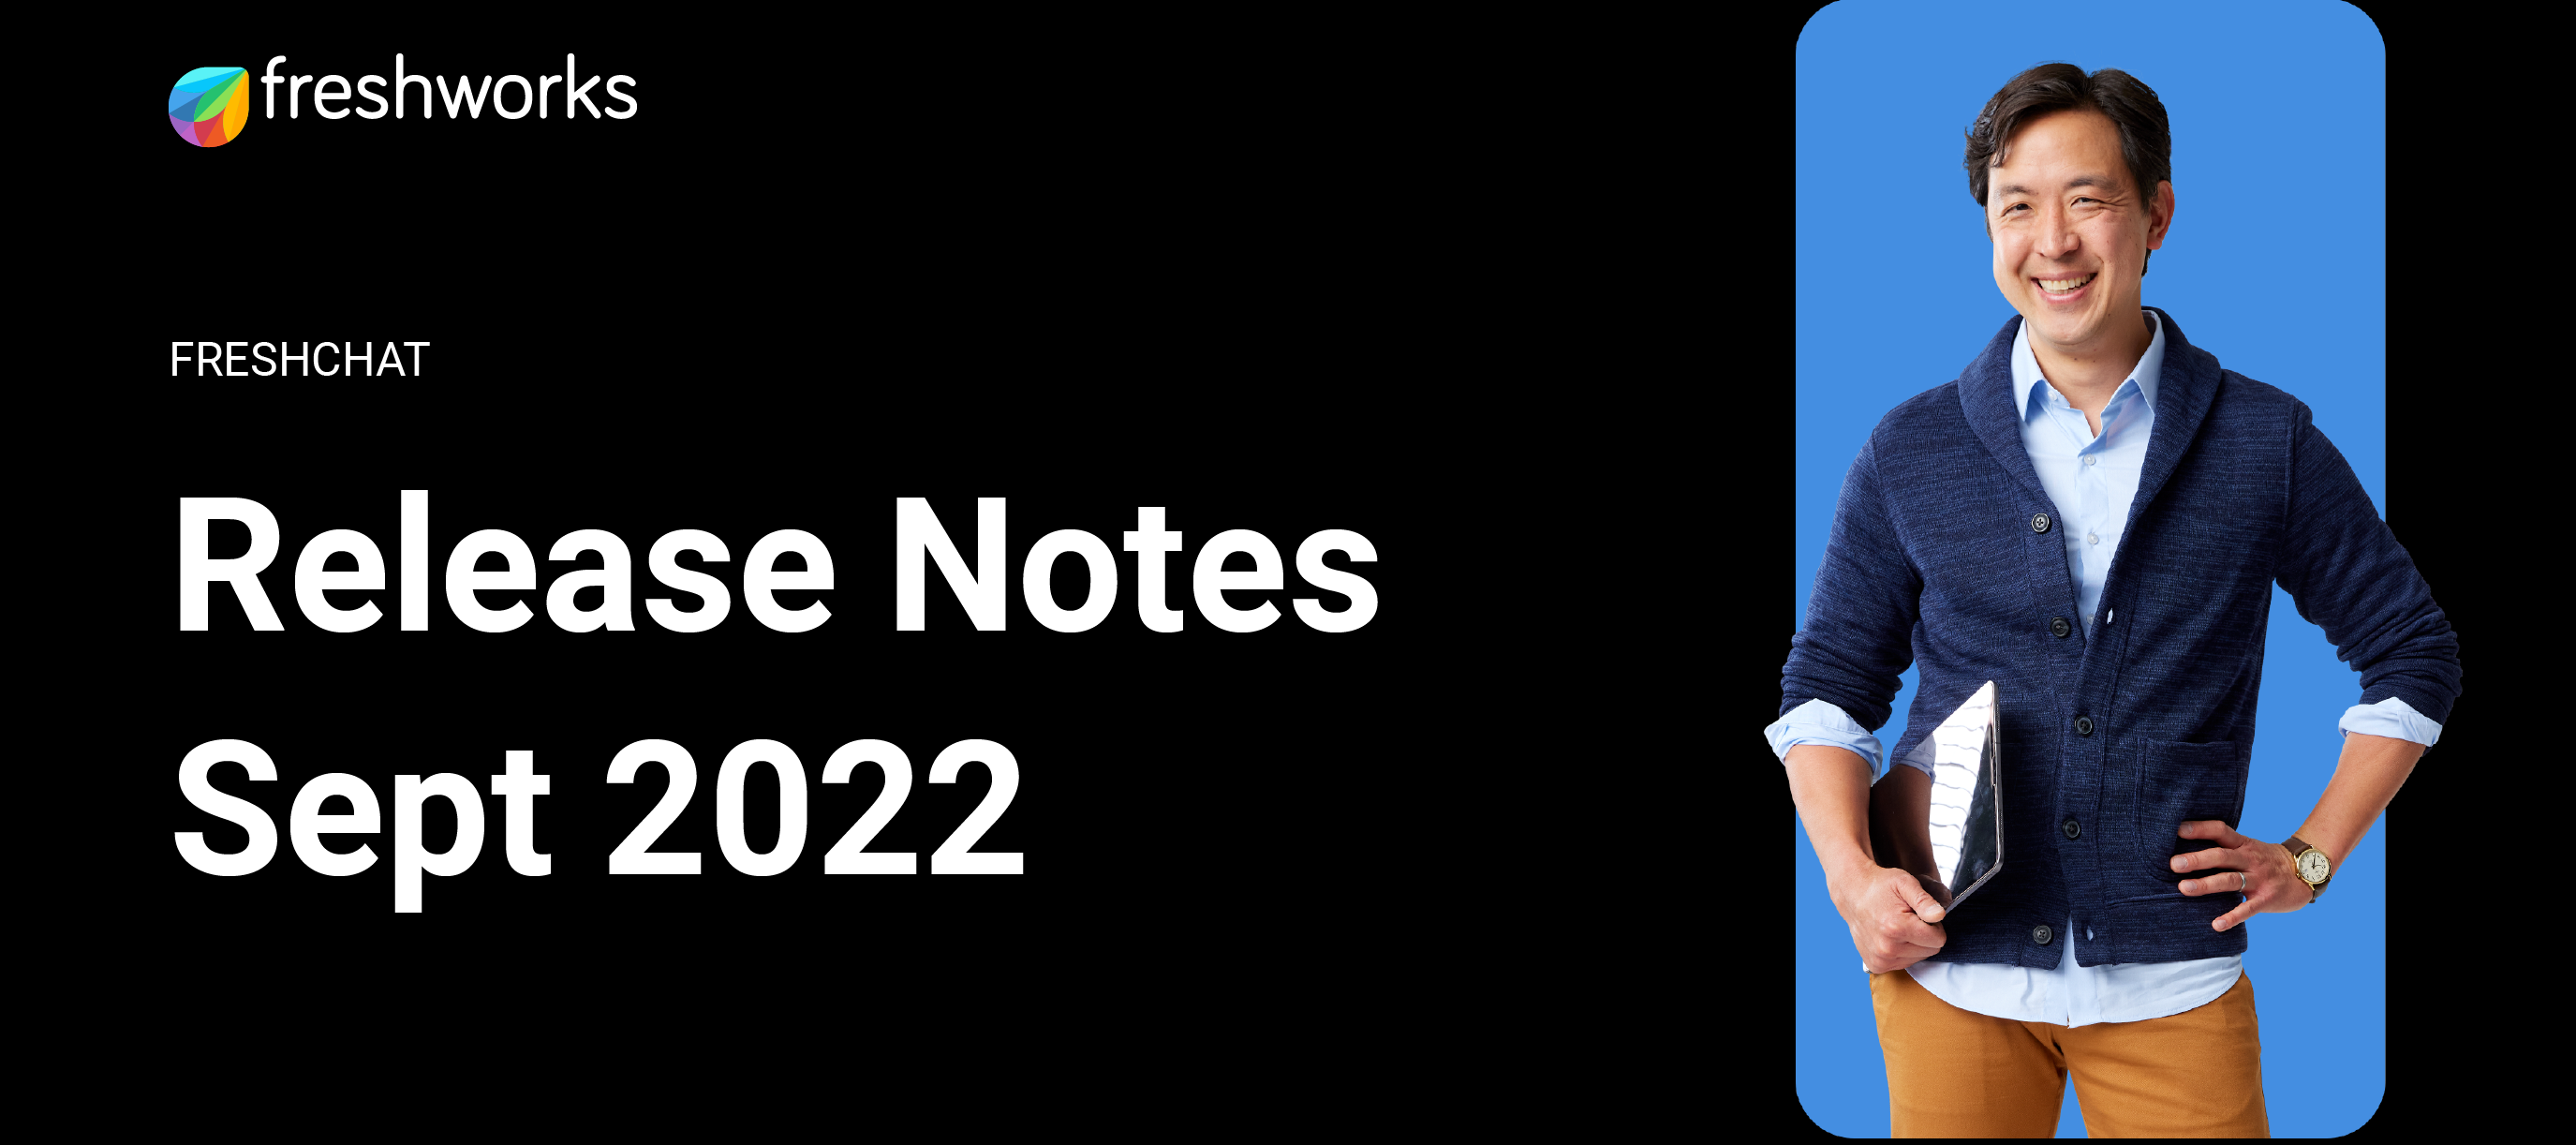 Freshchat Release Notes - Sept 2022